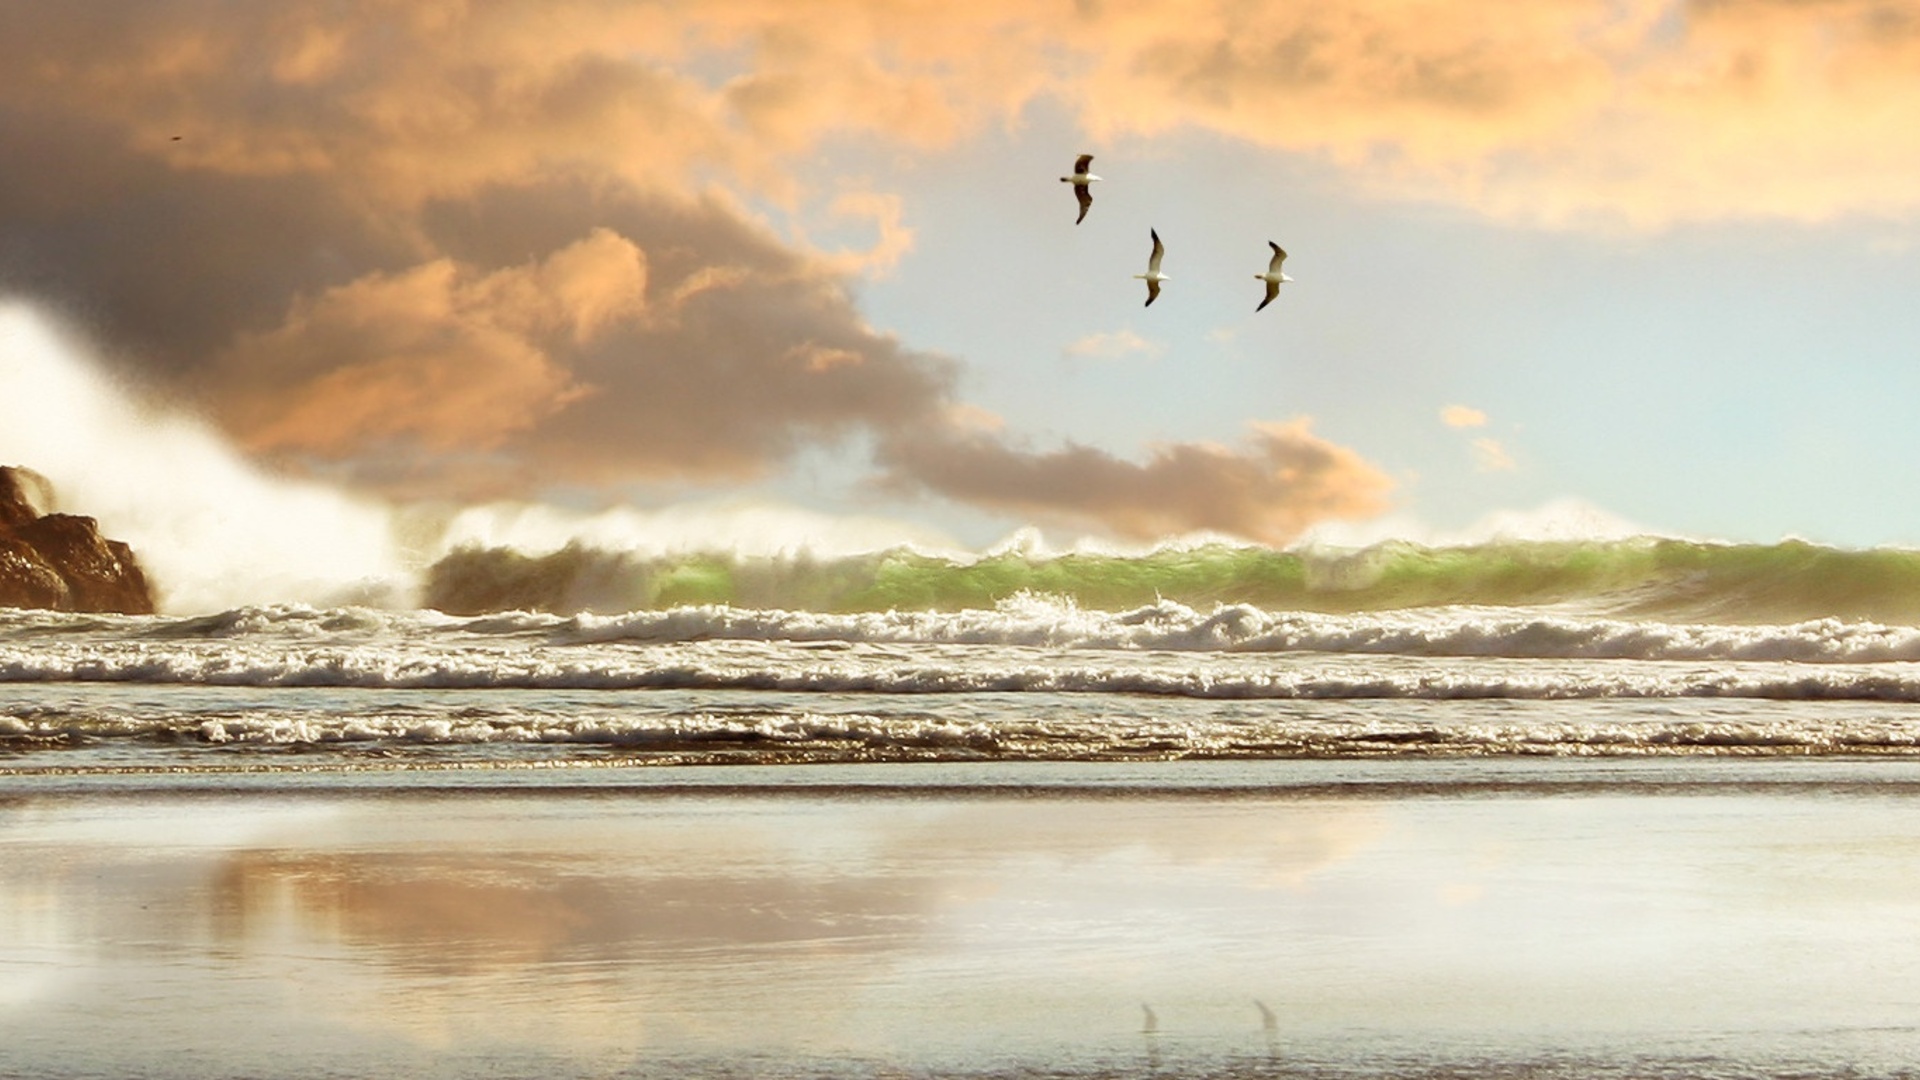 Скачать обои бесплатно Чайки, Облака, Океан, Волна, Земля/природа картинка на рабочий стол ПК